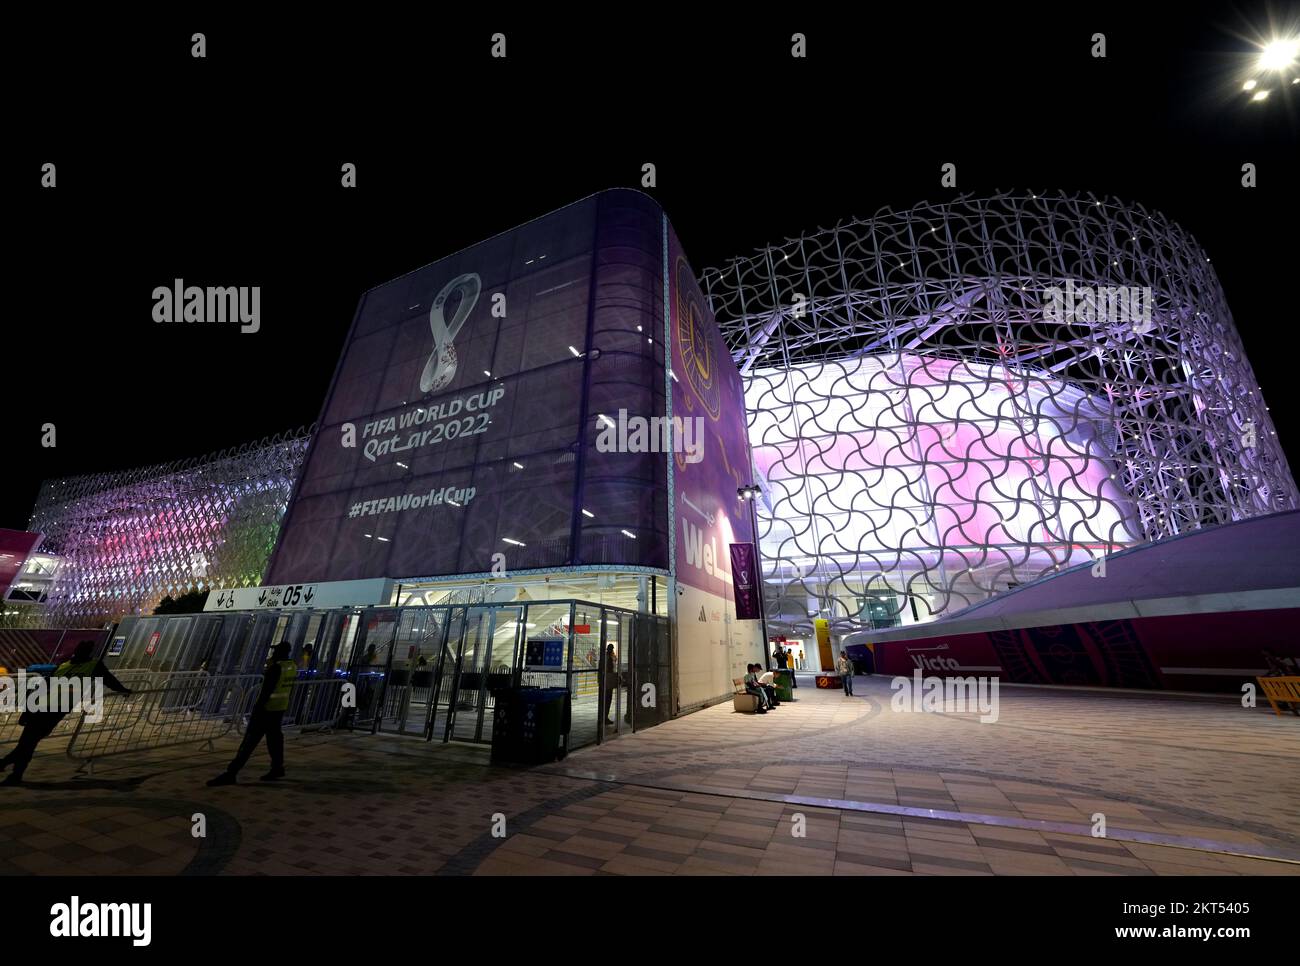 Une vue générale du stade Ahmad Bin Ali, Al Rayyan, Qatar, avant le match du groupe B de la coupe du monde de la FIFA entre le pays de Galles et l'Angleterre. Date de la photo: Mardi 29 novembre 2022. Banque D'Images